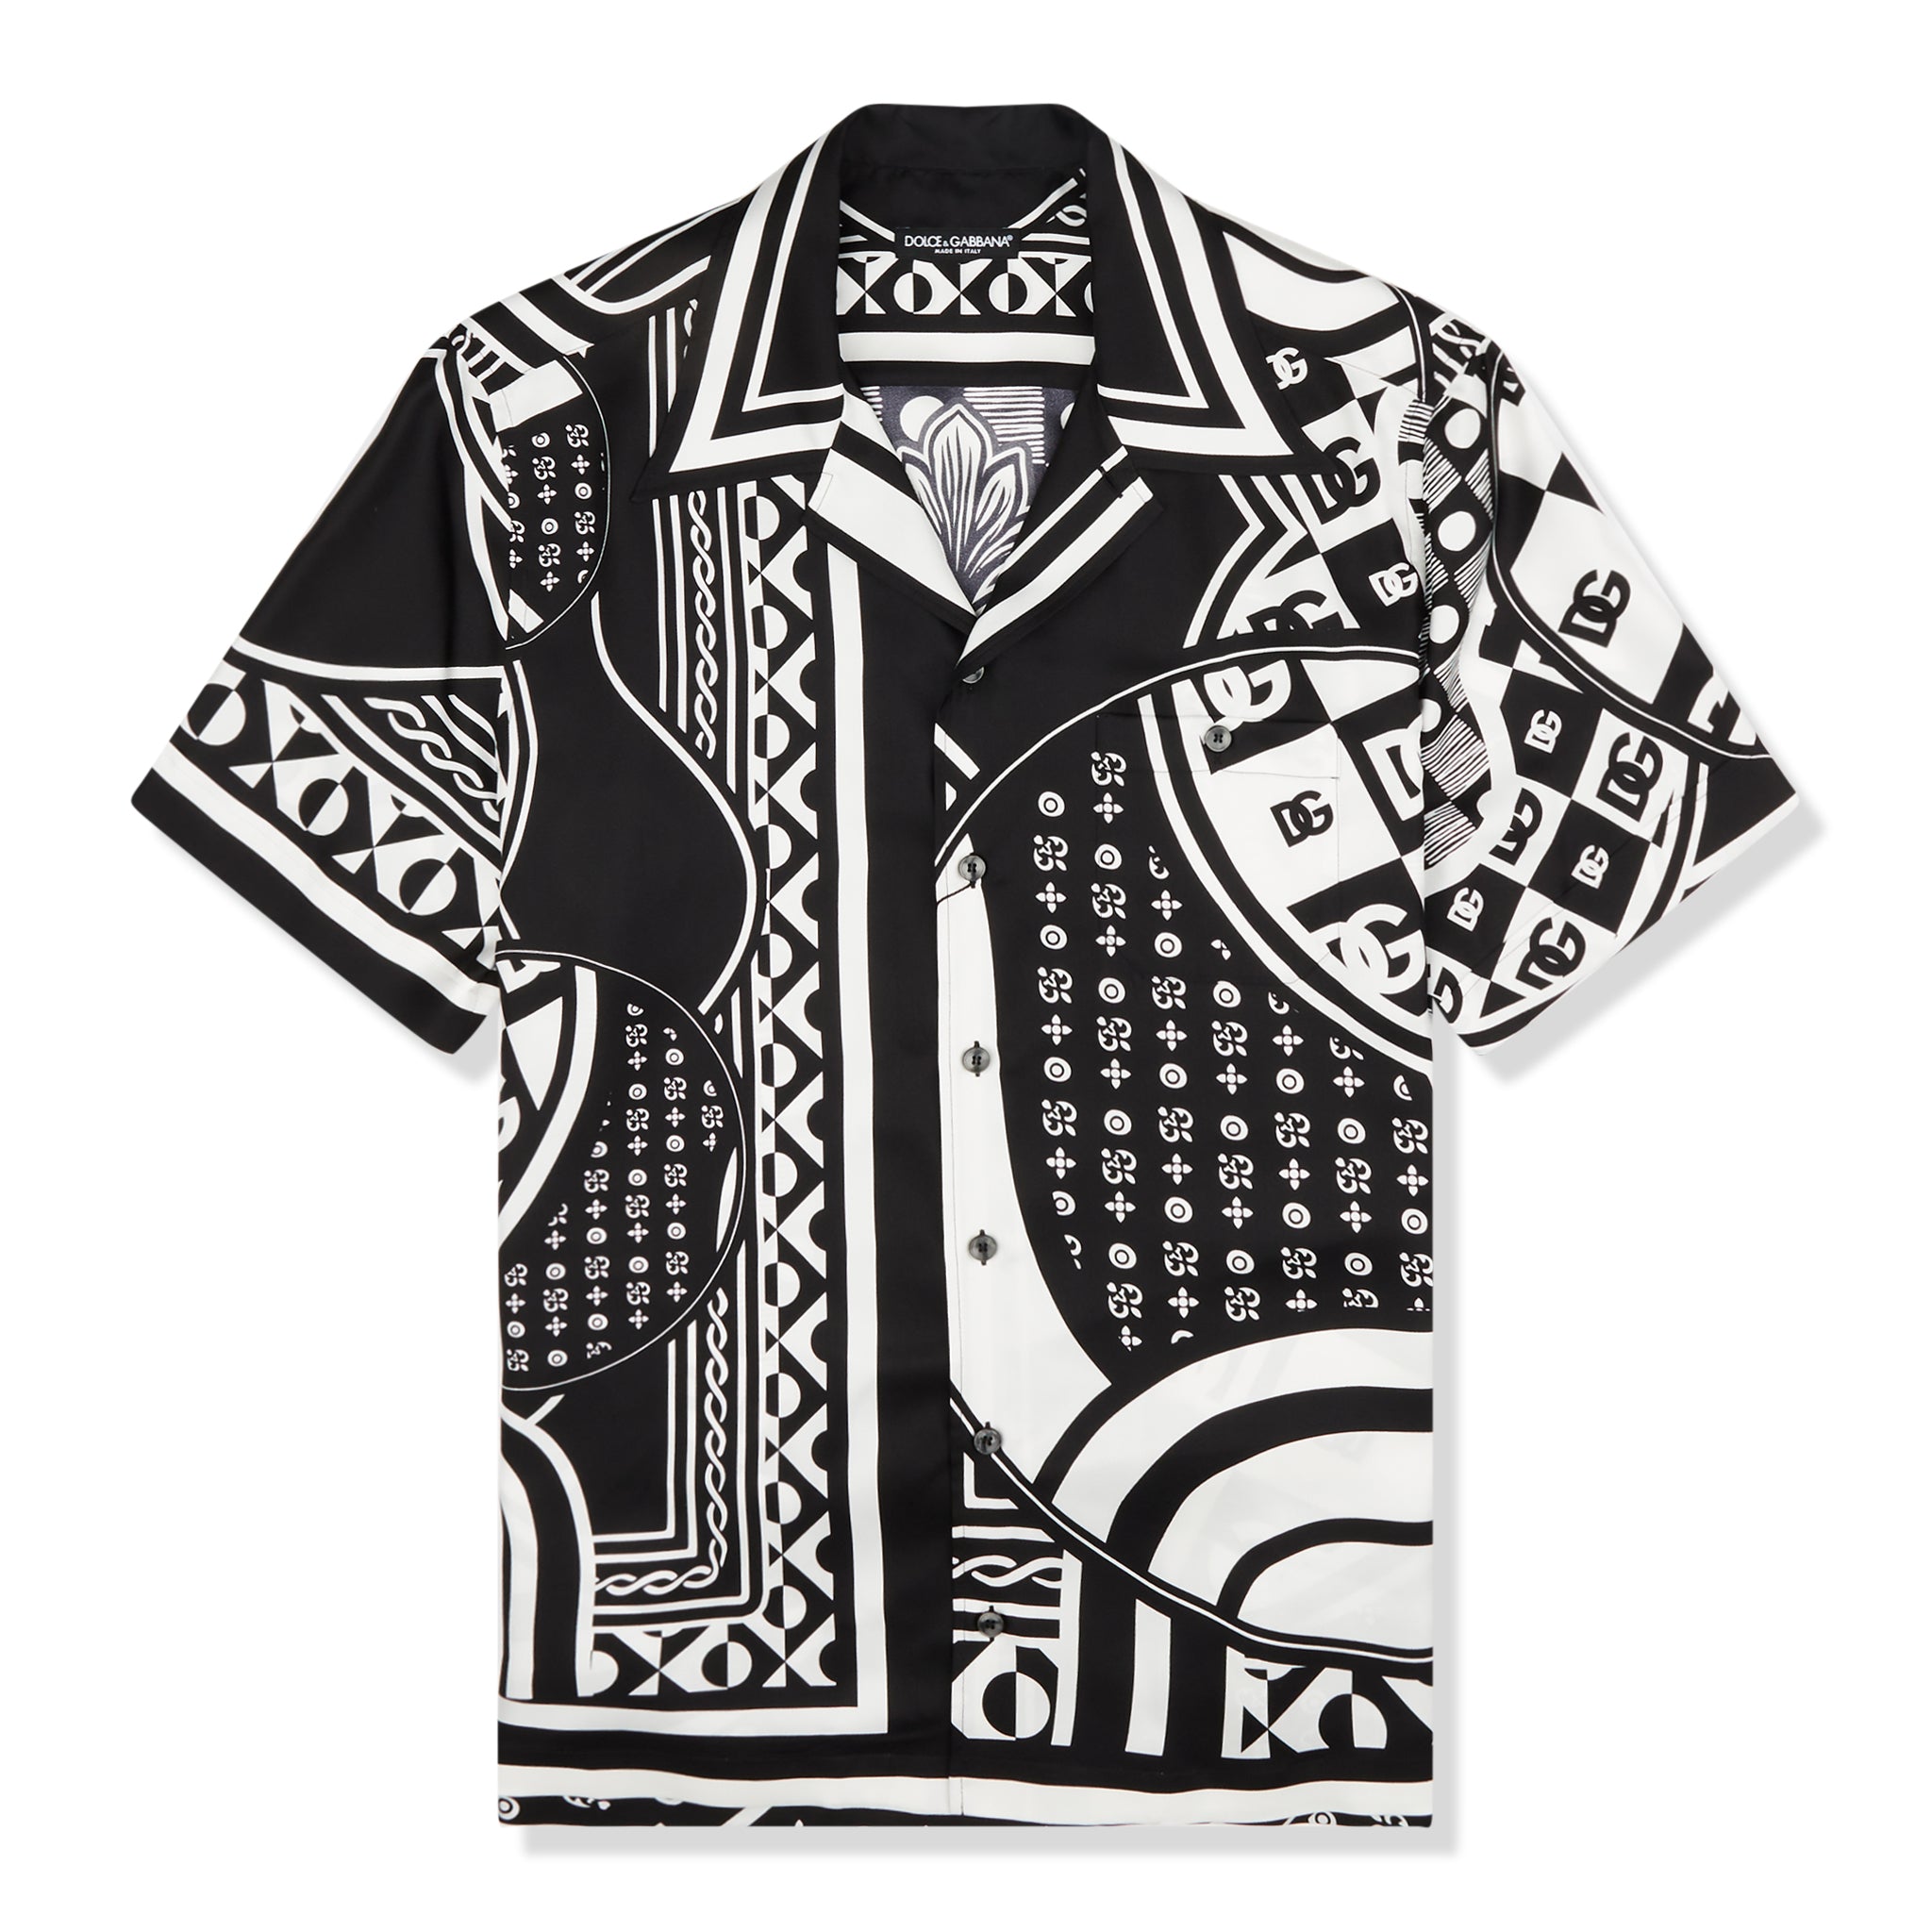 Dolce & Gabbana Coral-print Hawaiian shirt - ShopStyle